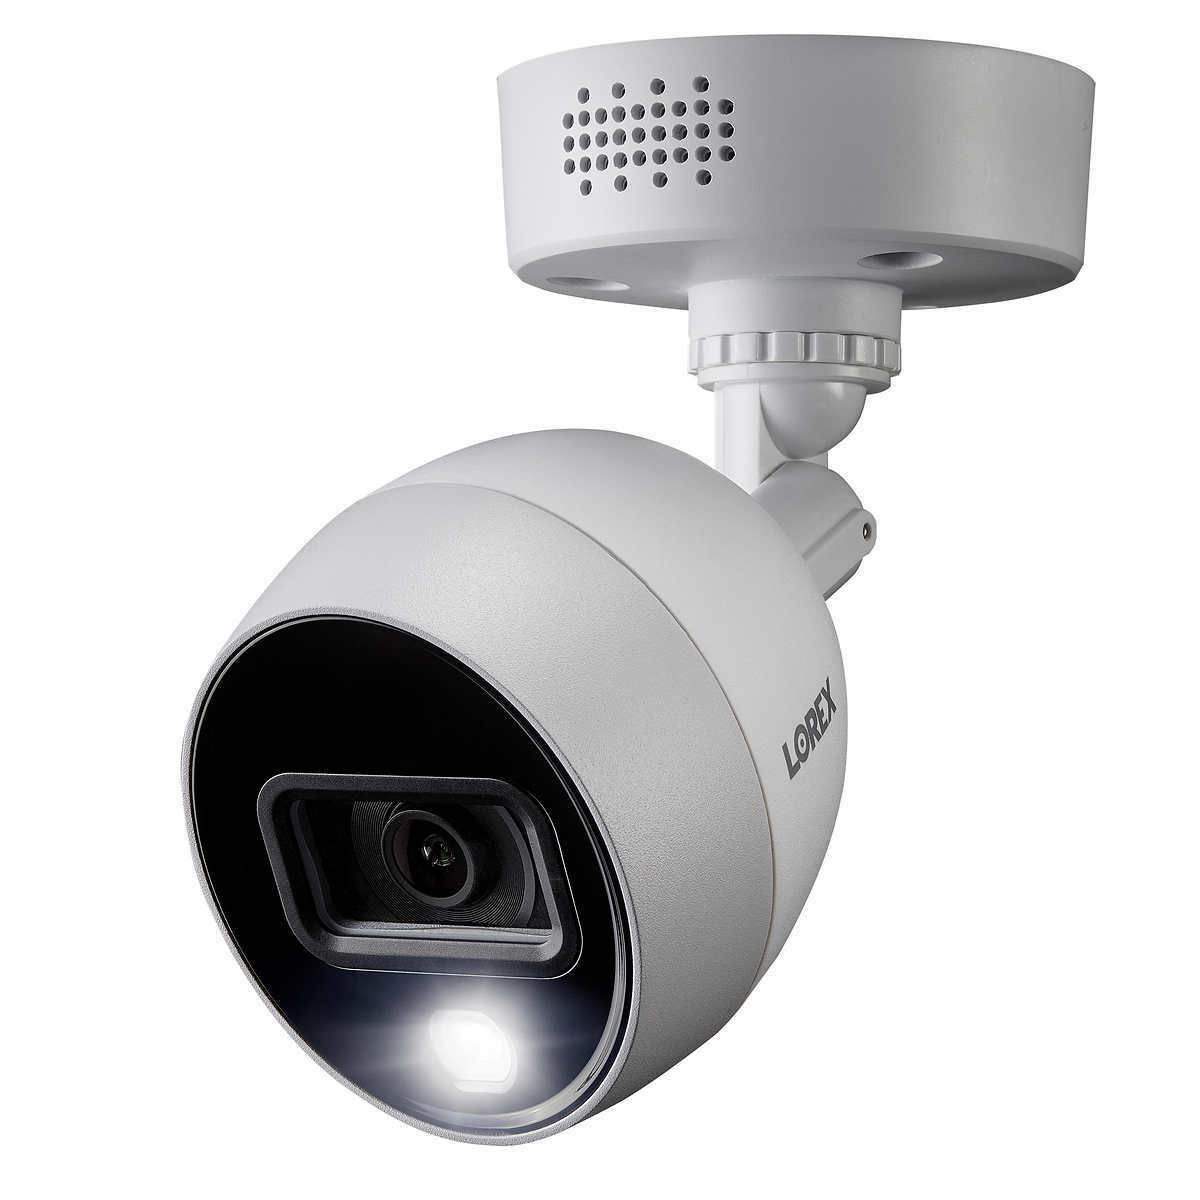 lot of 4 Lorex C883DA Indoor Outdoor Deterrence HD 4K Security Camera